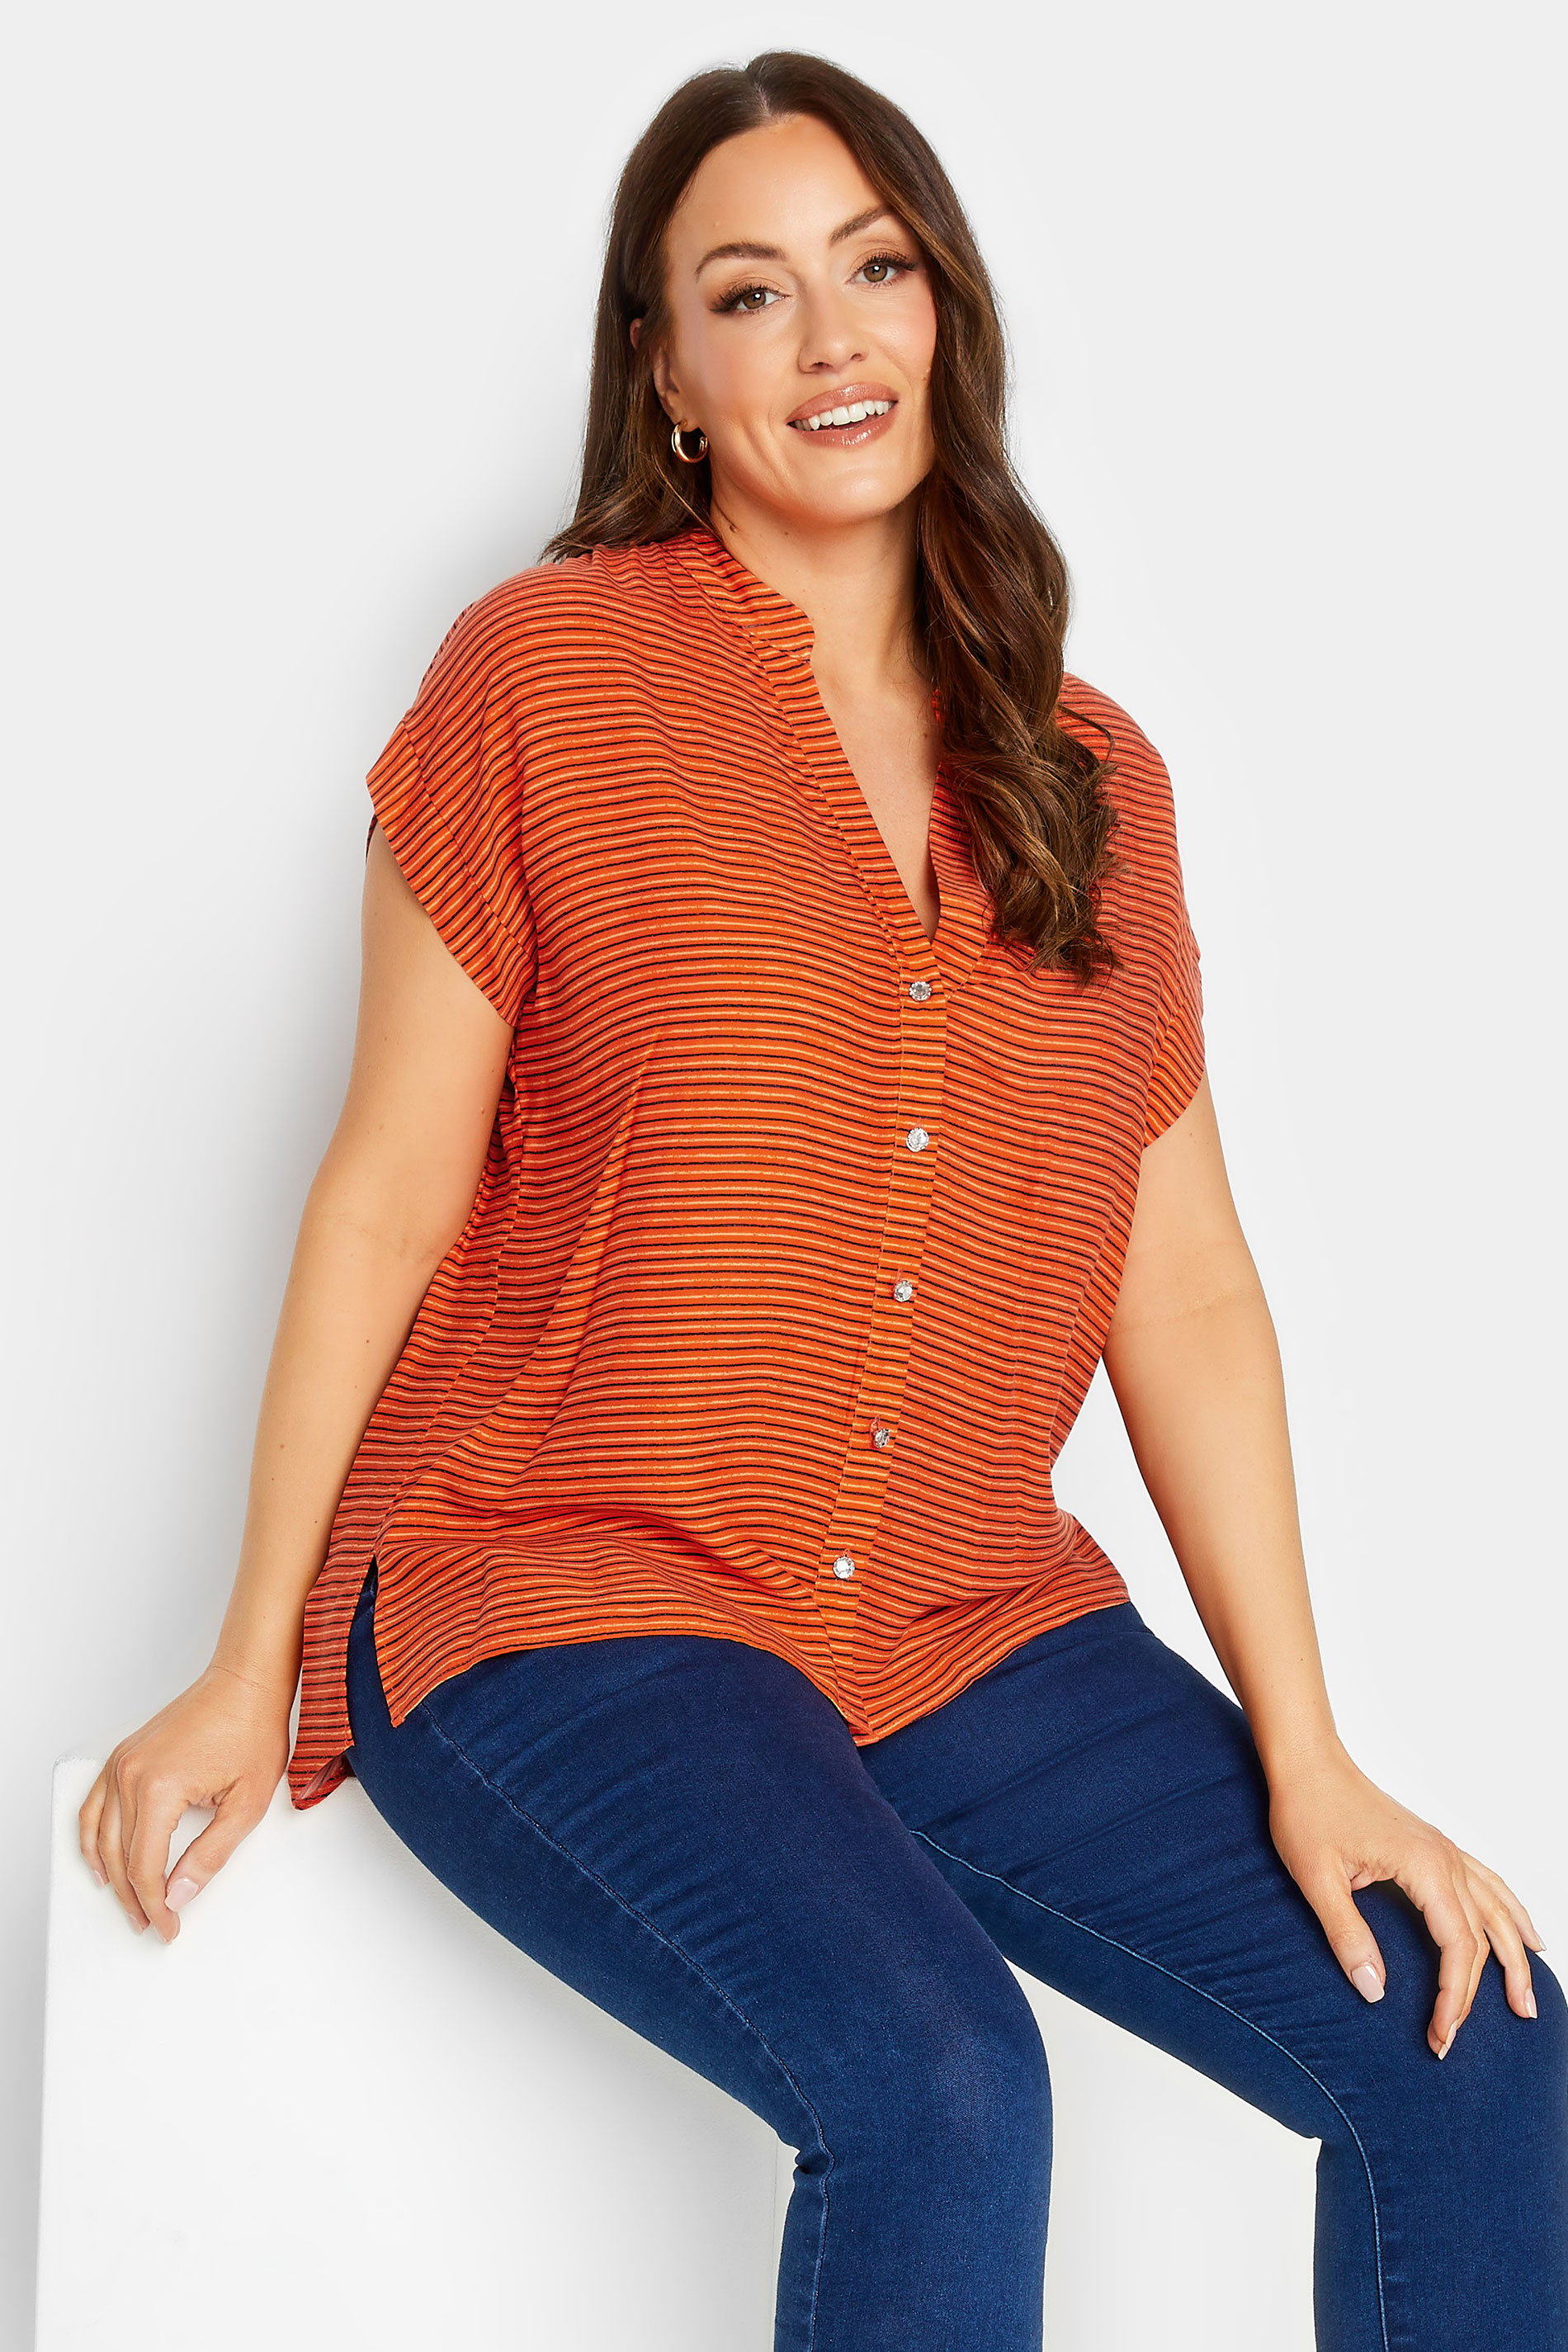 M&Co Women's Orange Stripe Grown On Sleeve Top | M&Co 1